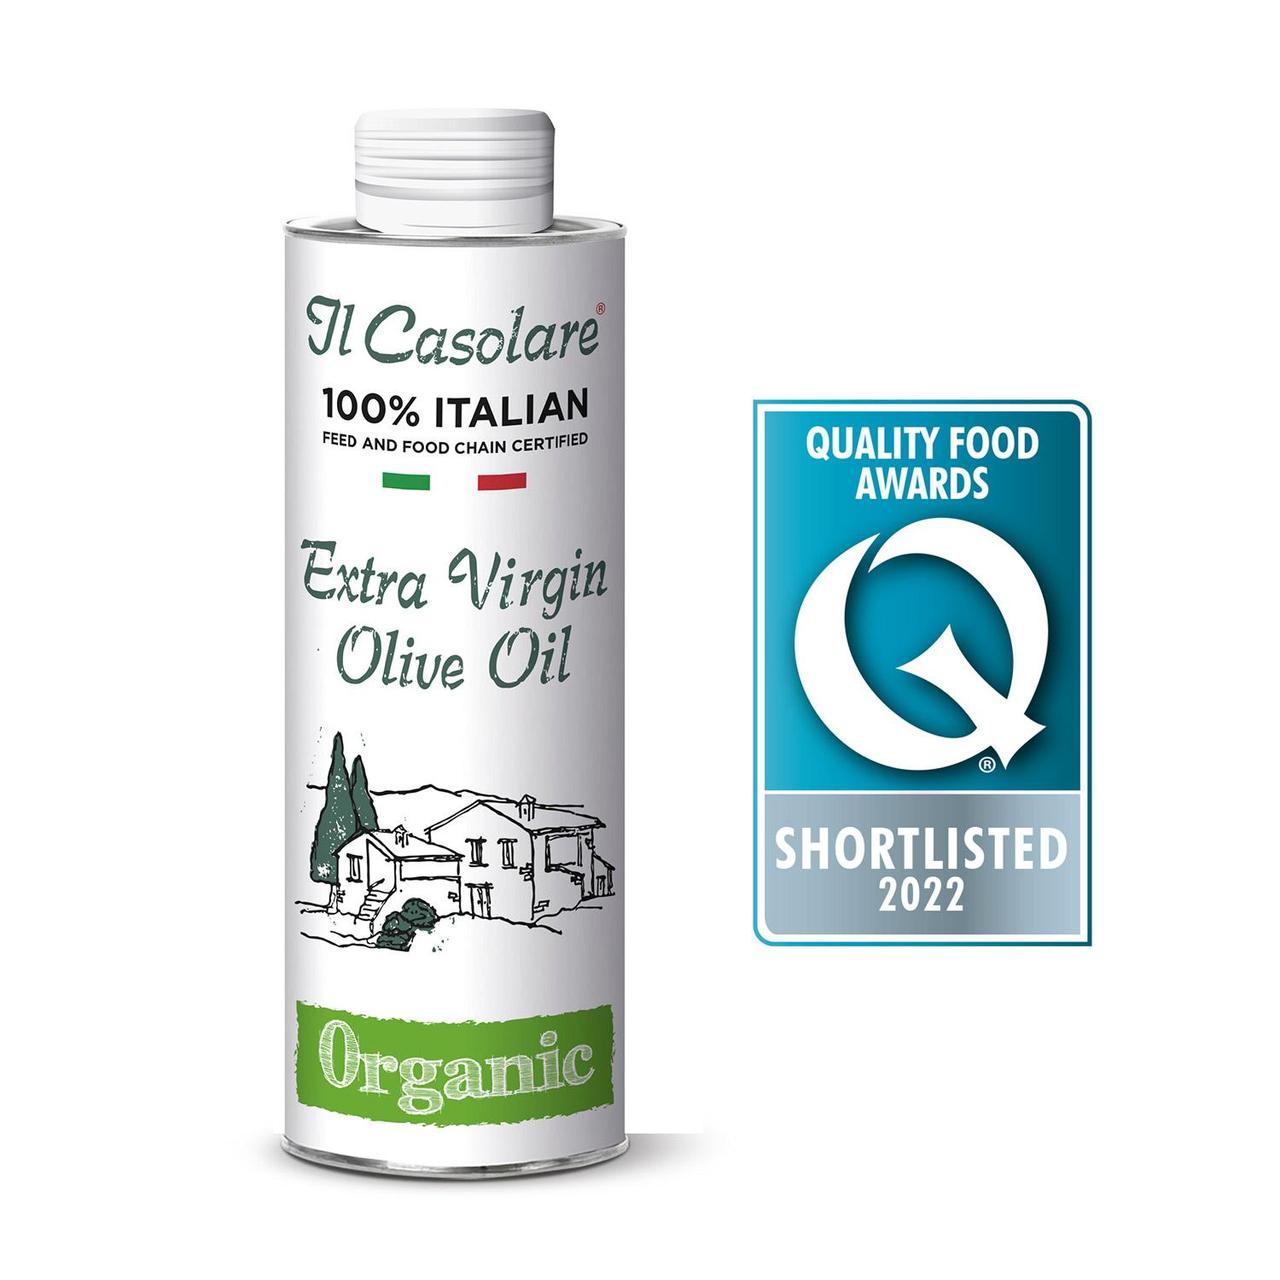 Il Casolare 100% Italian Organic Extra Virgin Olive Oil